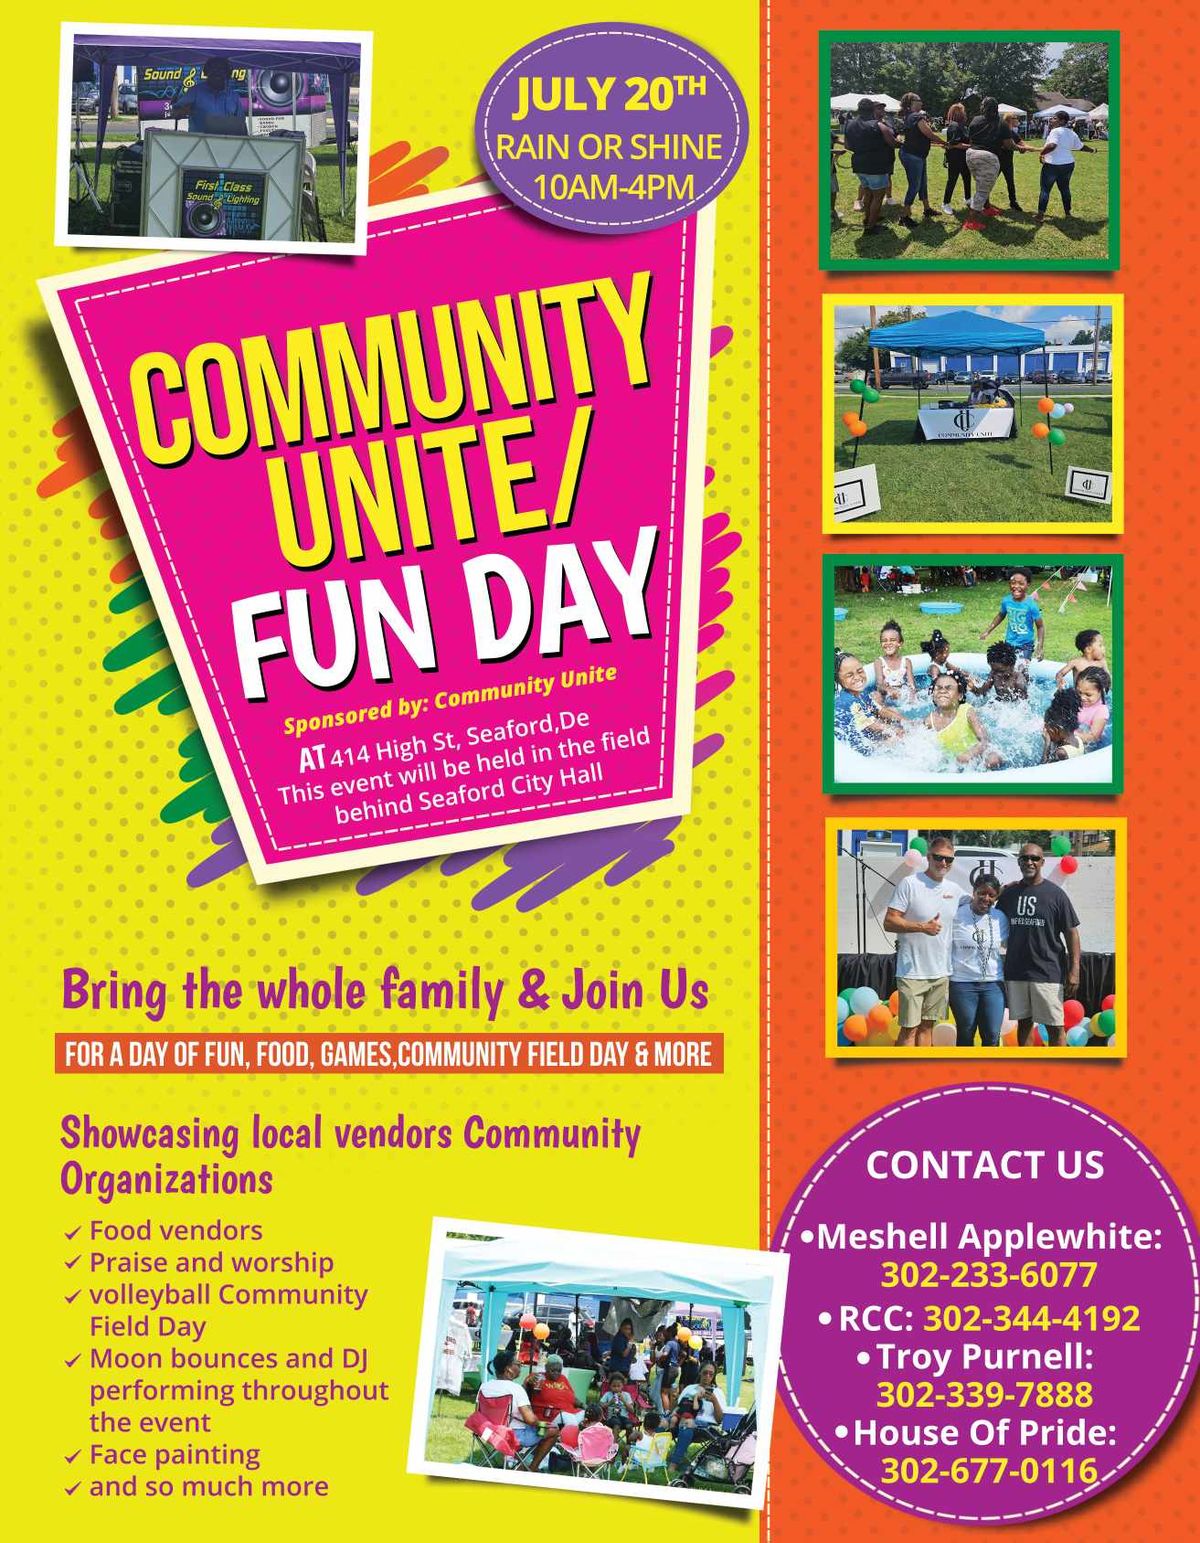 Community Unite \/Fun Day